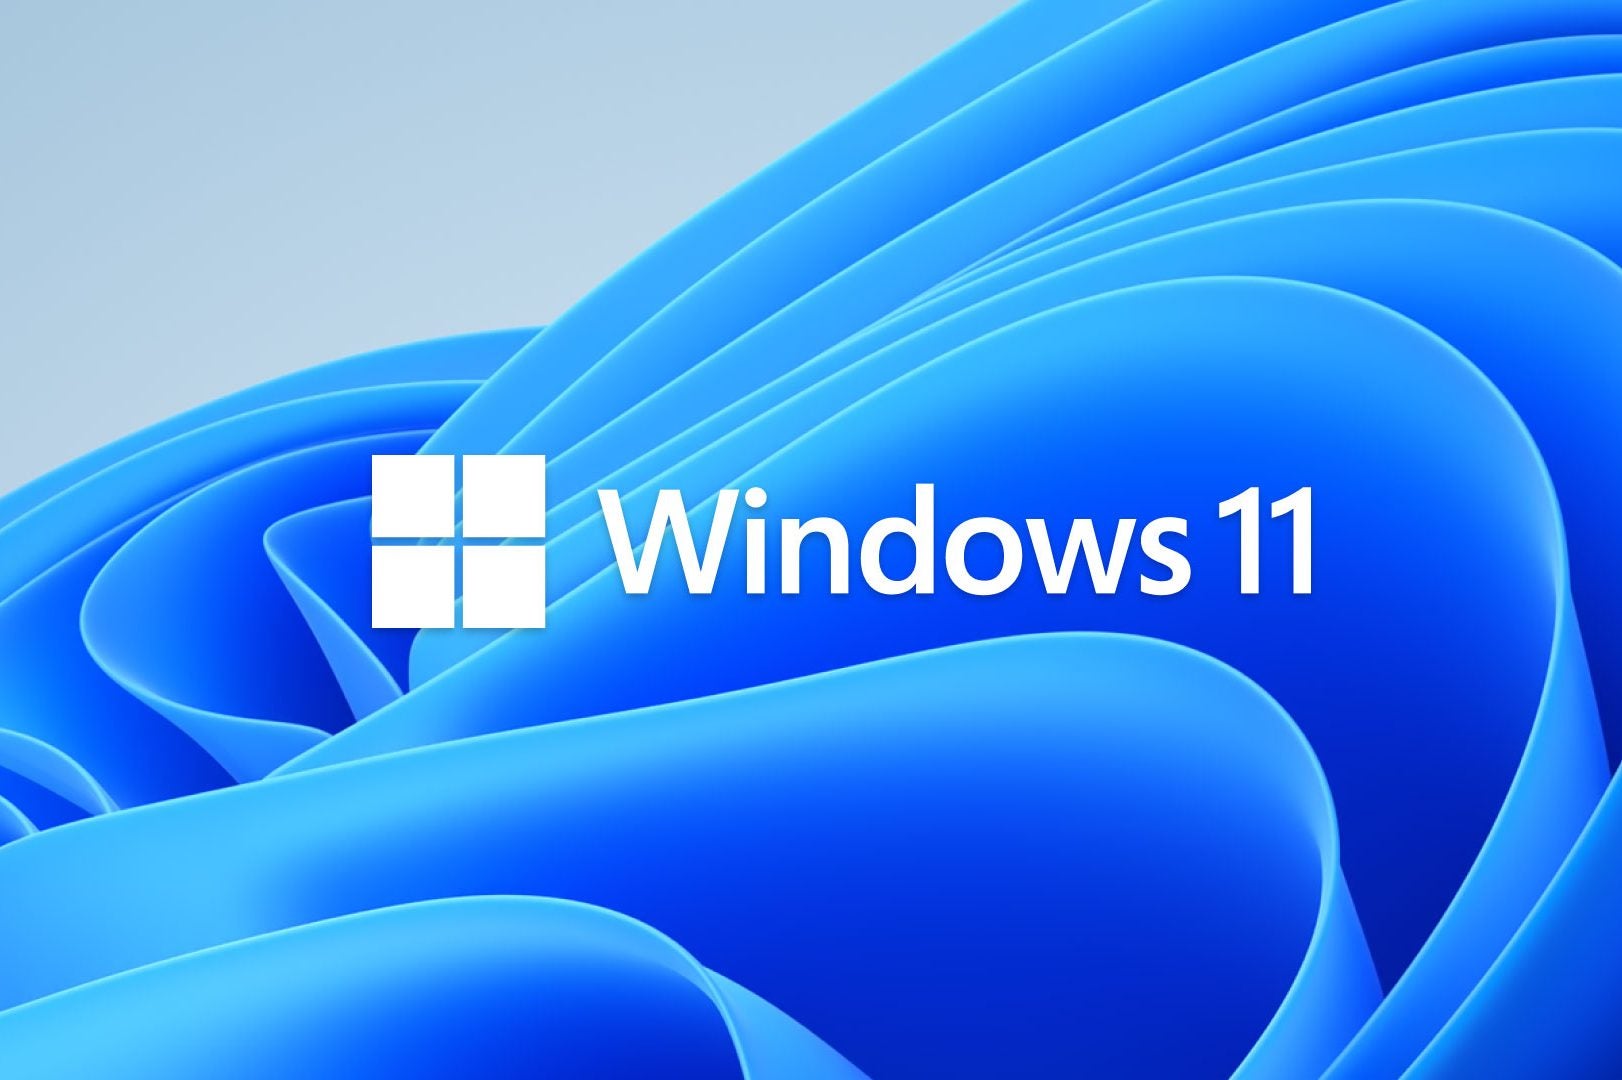 download windows 11 64 bit full version free